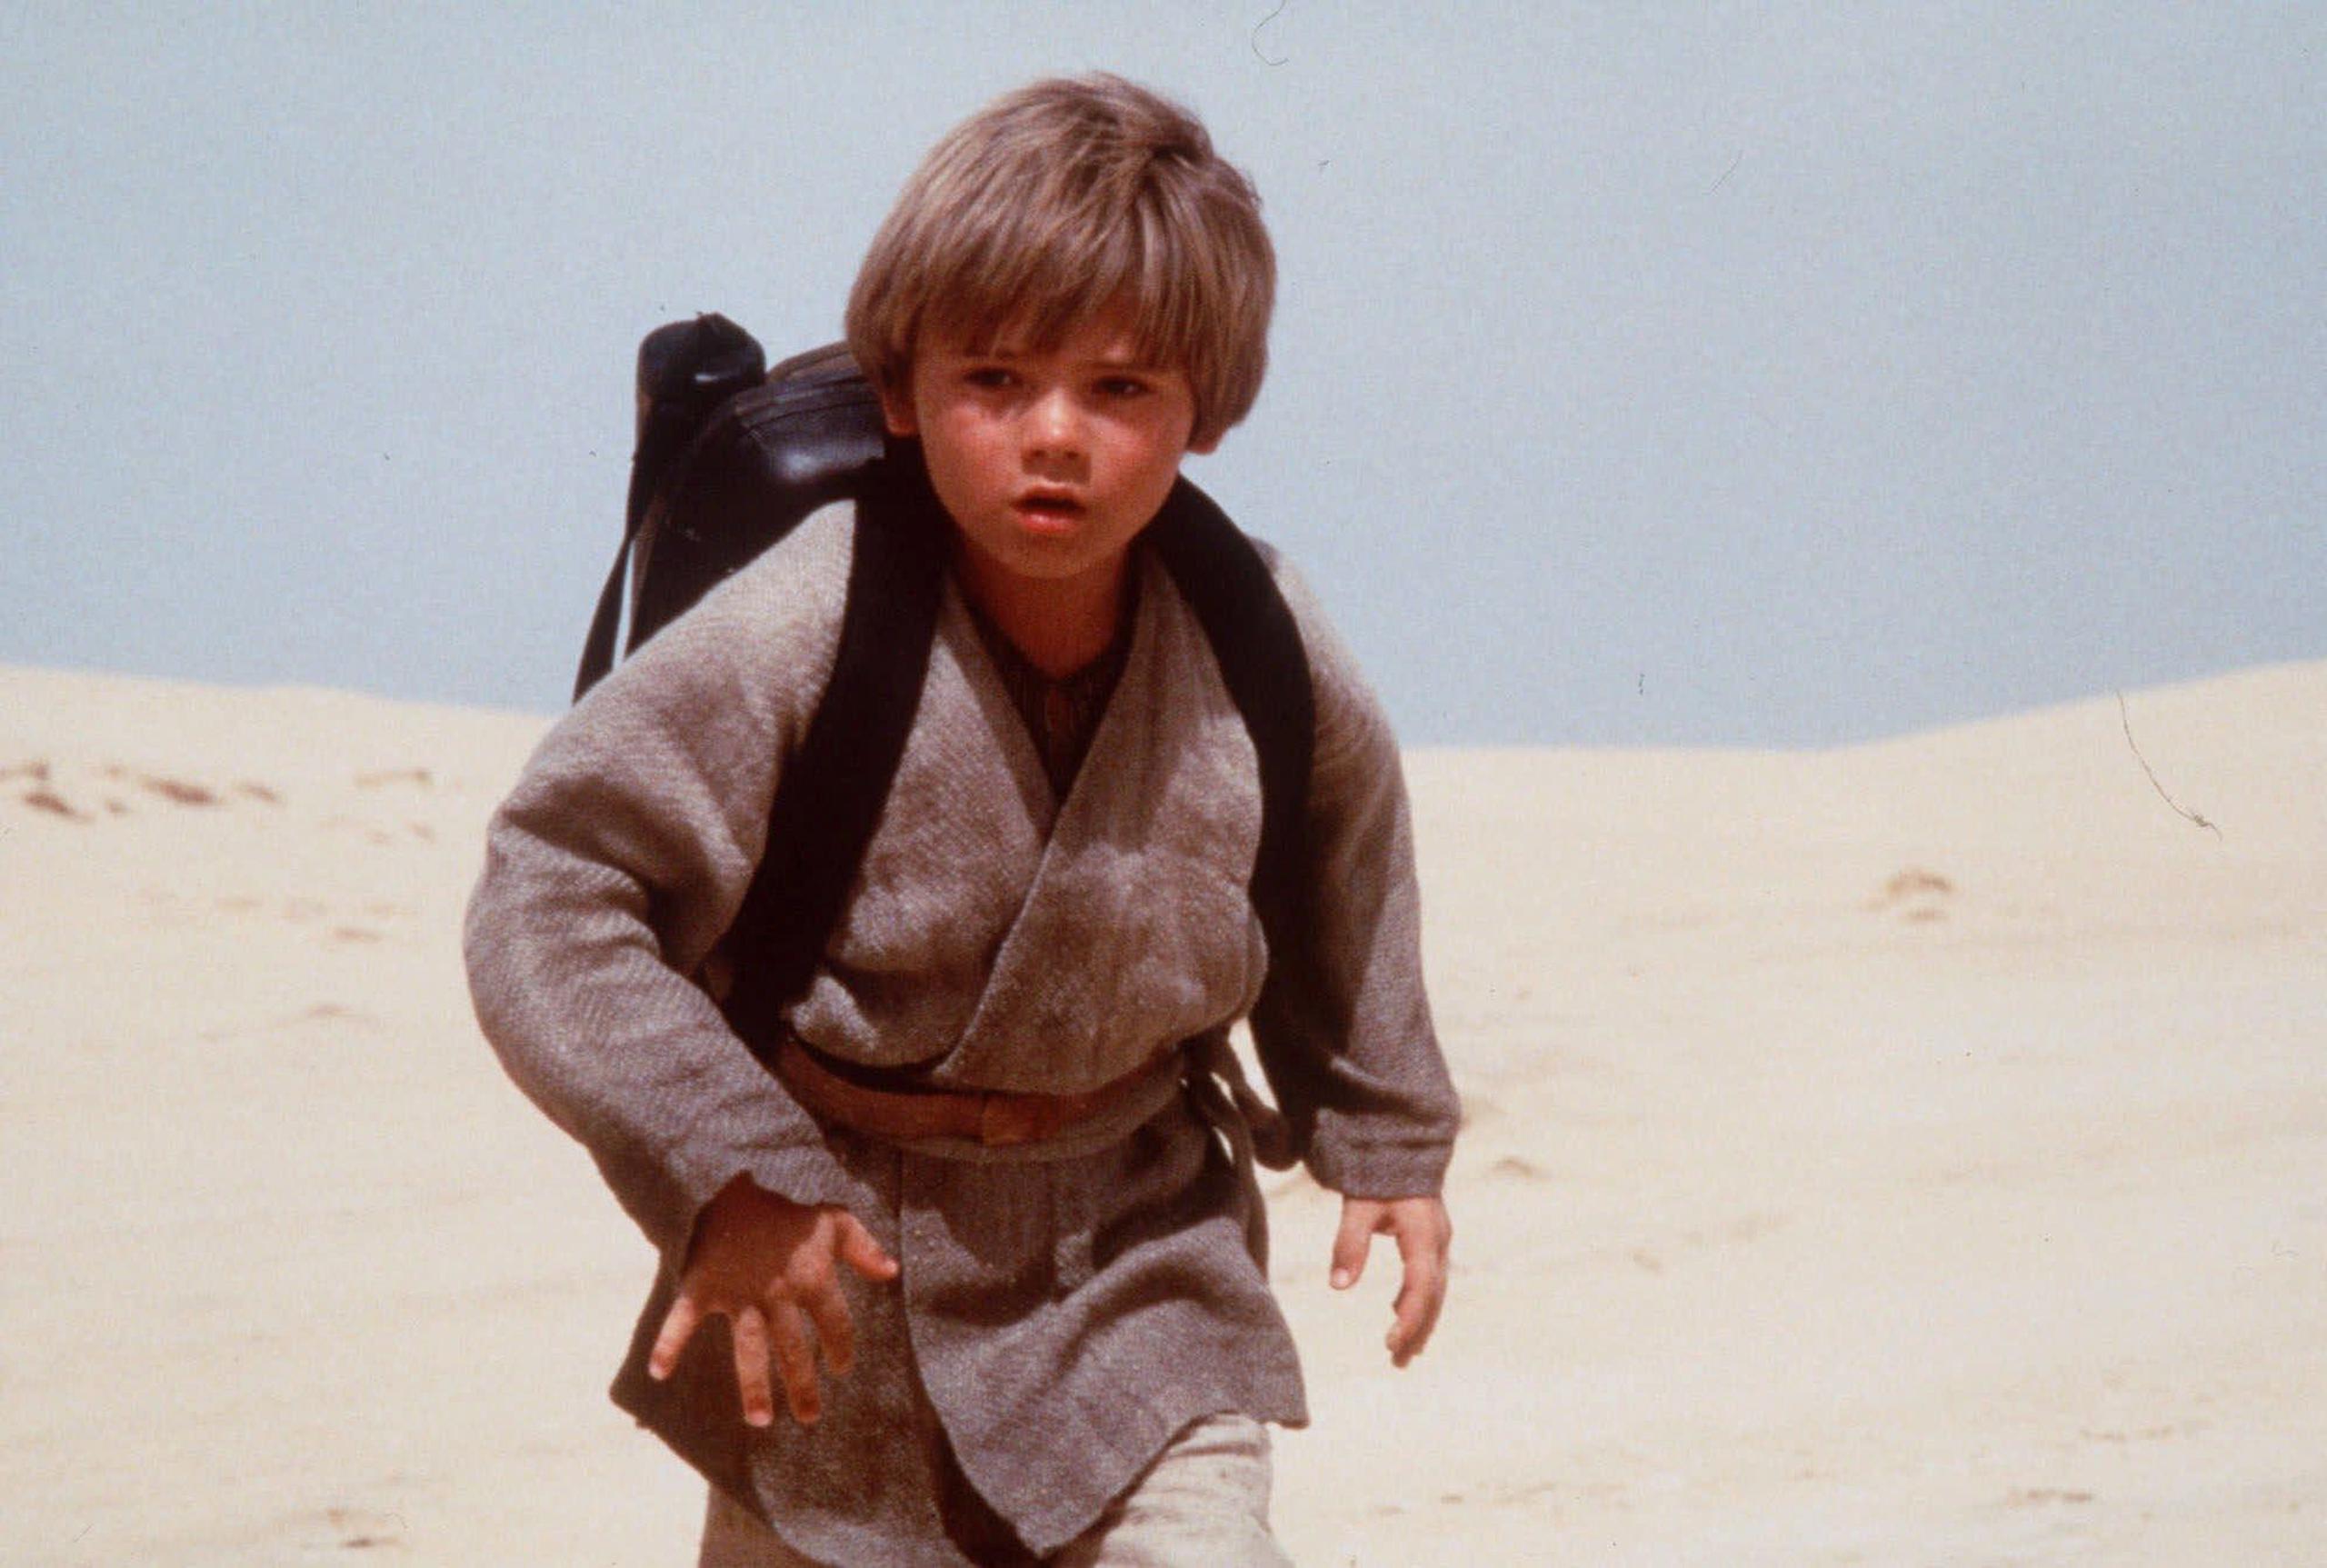 Jake Lloyd saltó a la fama cuando fue seleccionado, a los 10 años de edad, para interpretar a Anakin Skywalker, personaje que en su adultez se convertiría en el maléfico Darth Vader. (AP)